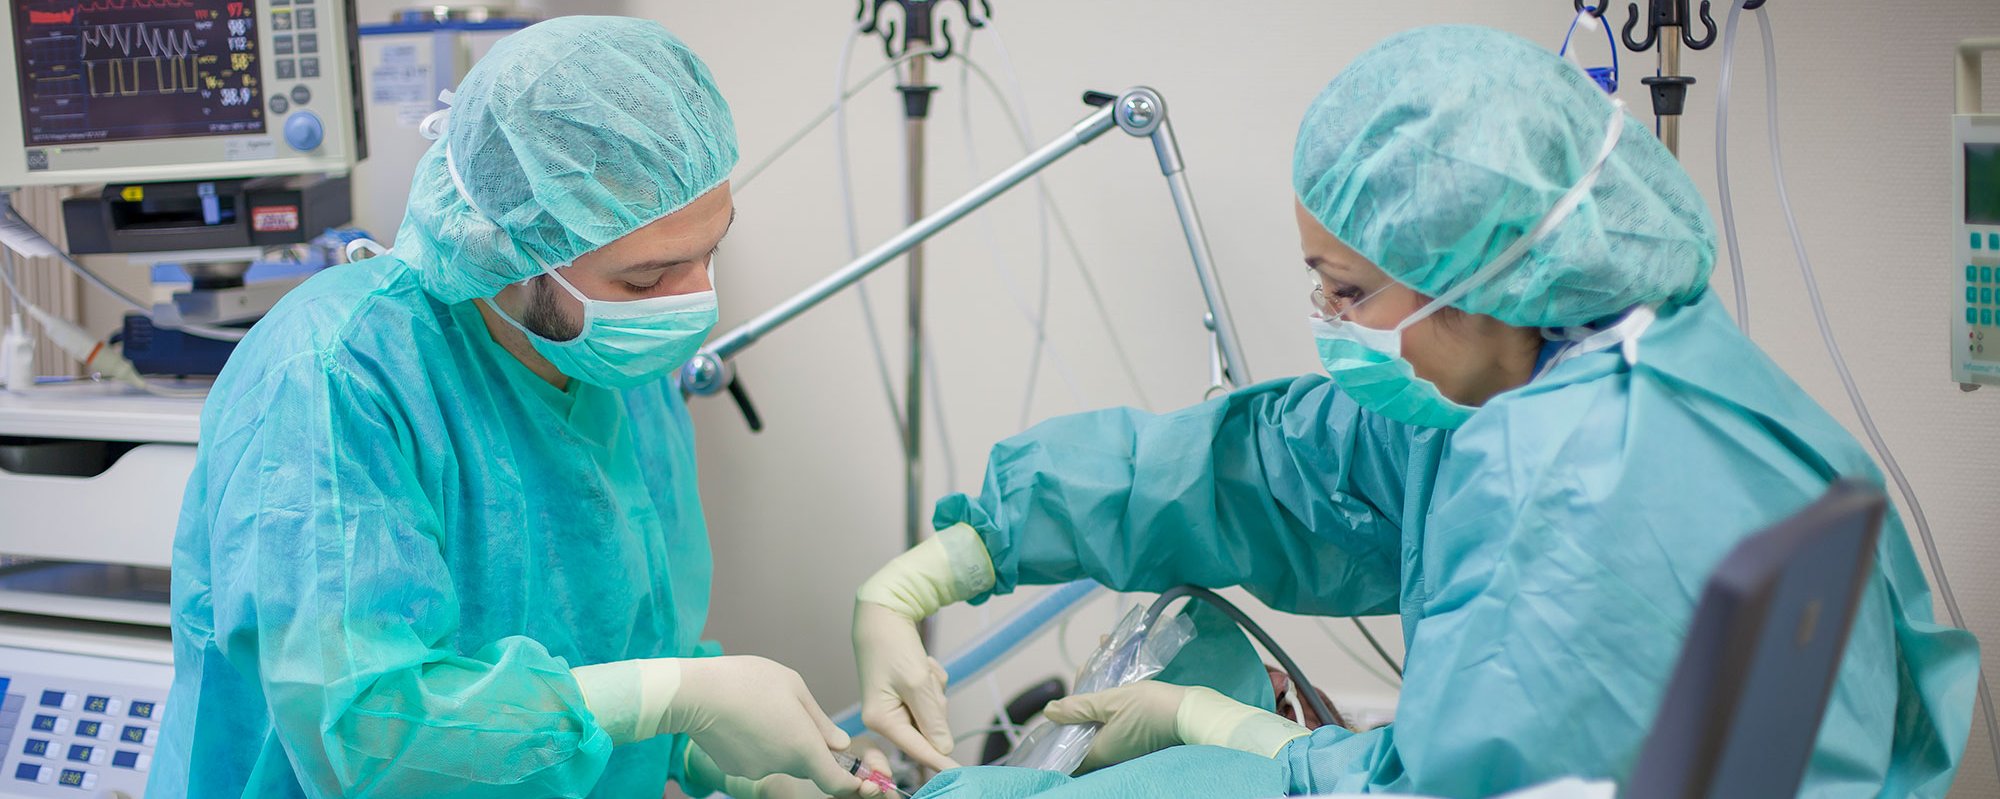 Zwei Ärzte der Wertachkliniken operieren einen Intensivpatienten